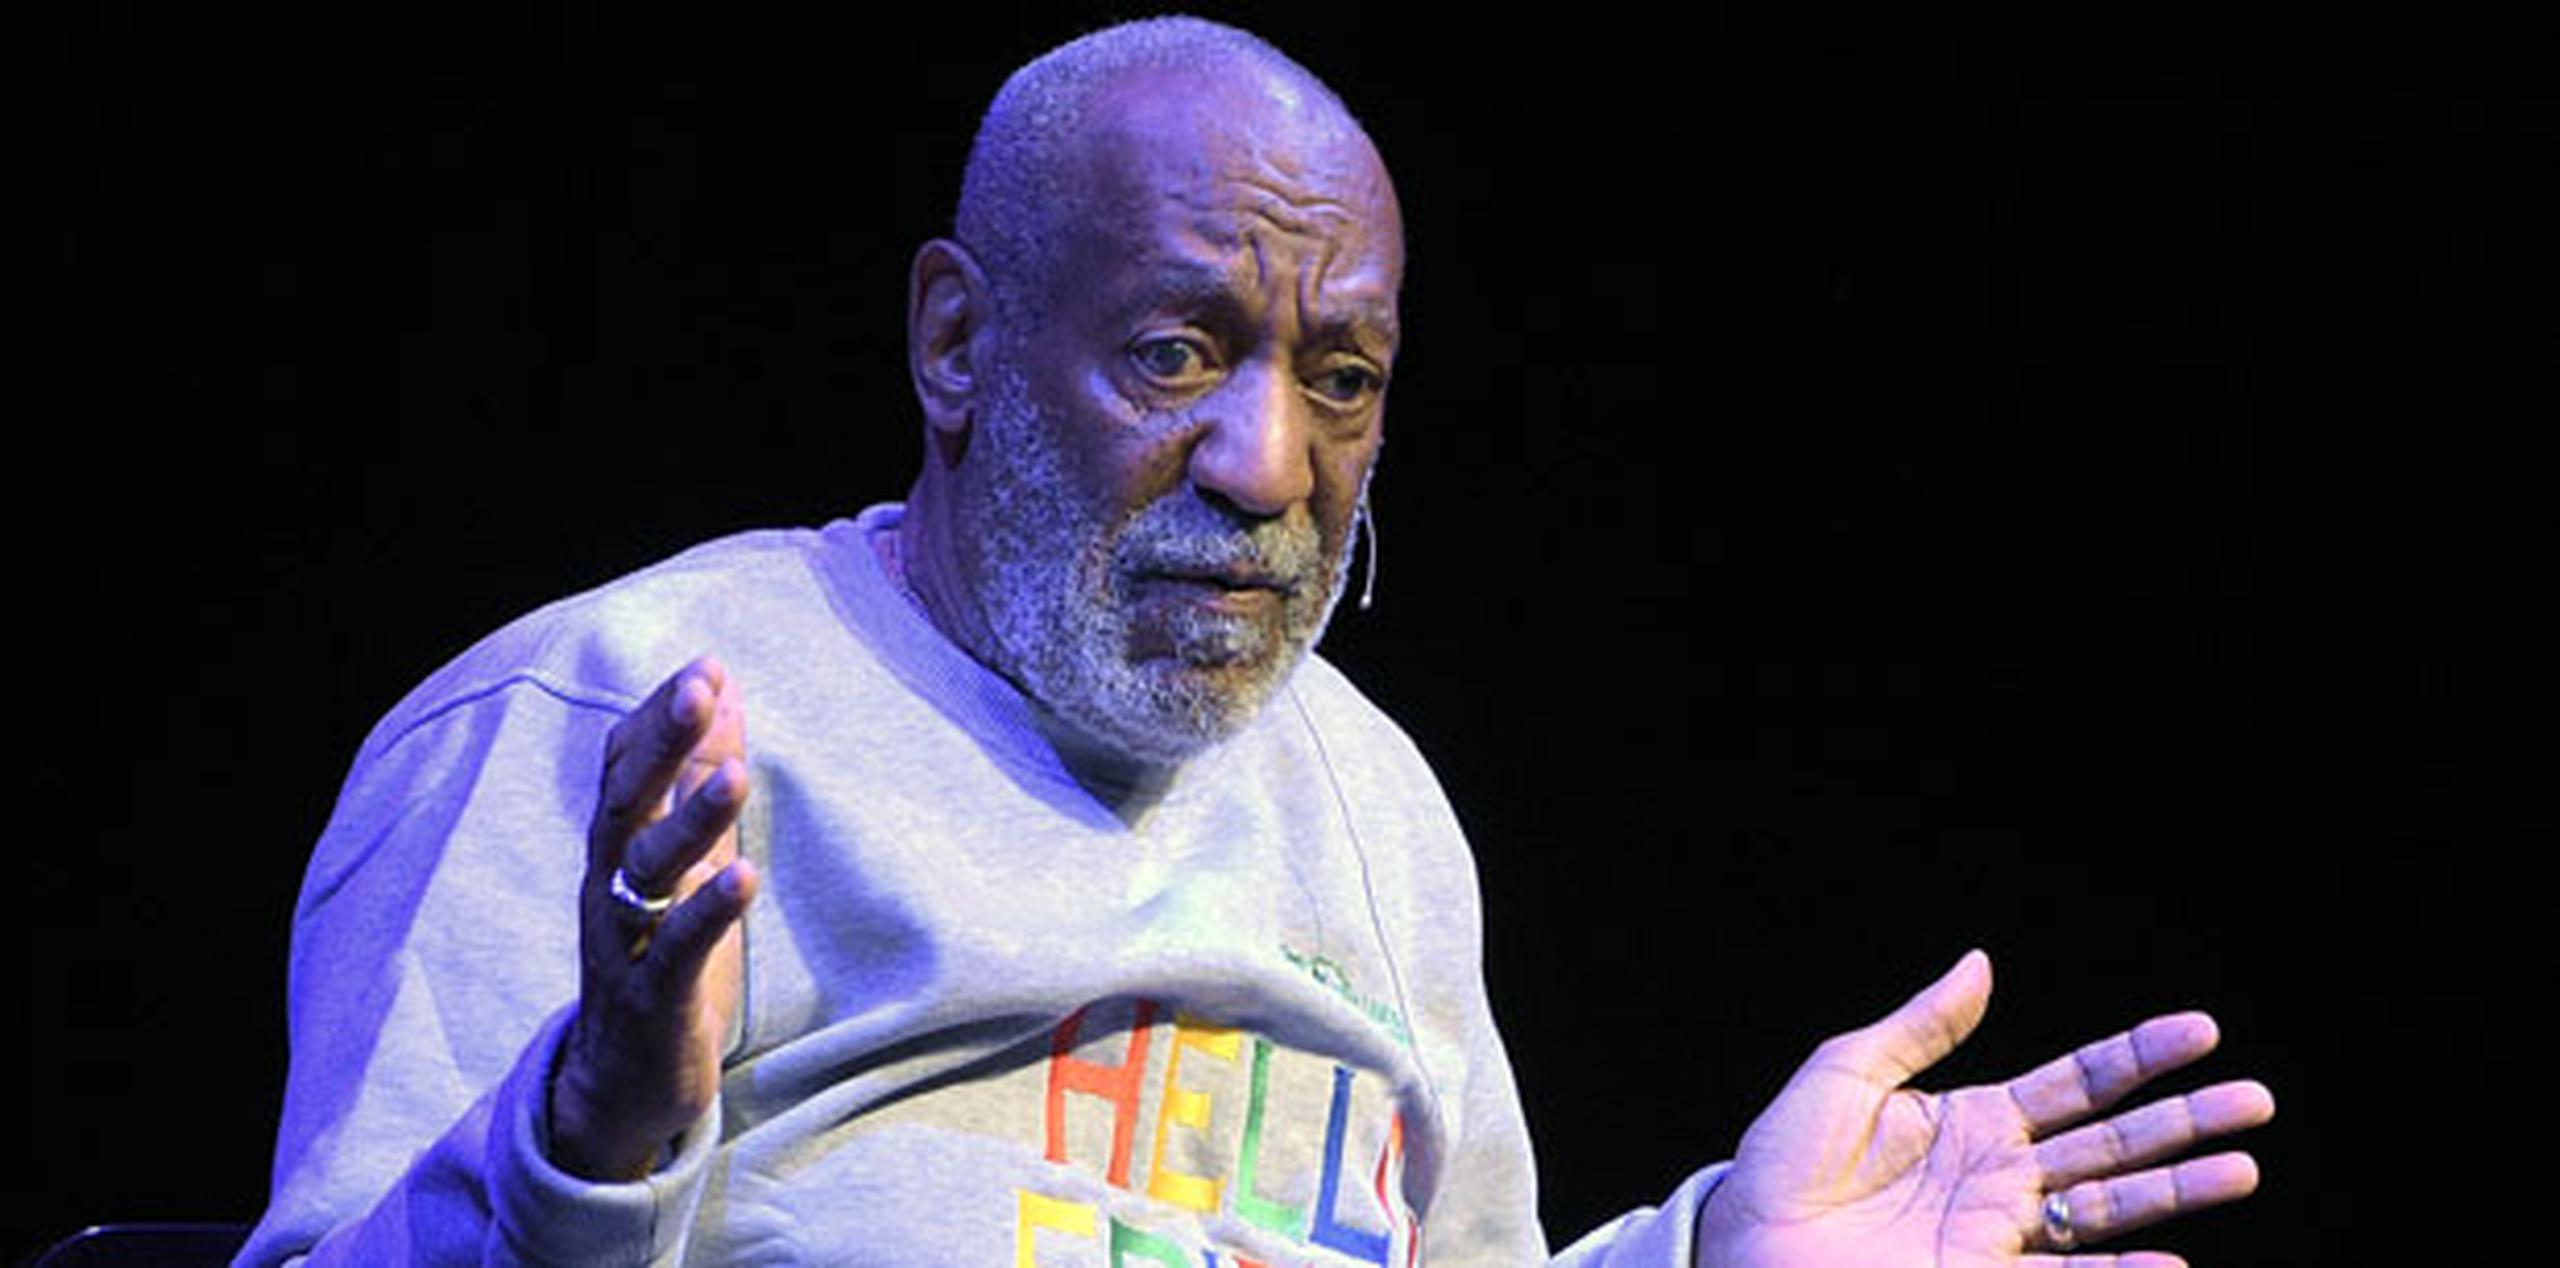 Cosby acumula ya cerca de una decena de denuncias de mujeres que aseguran haber sufrido abusos sexuales por parte del cómico, que continúa sin responder a las acusaciones. (AP)